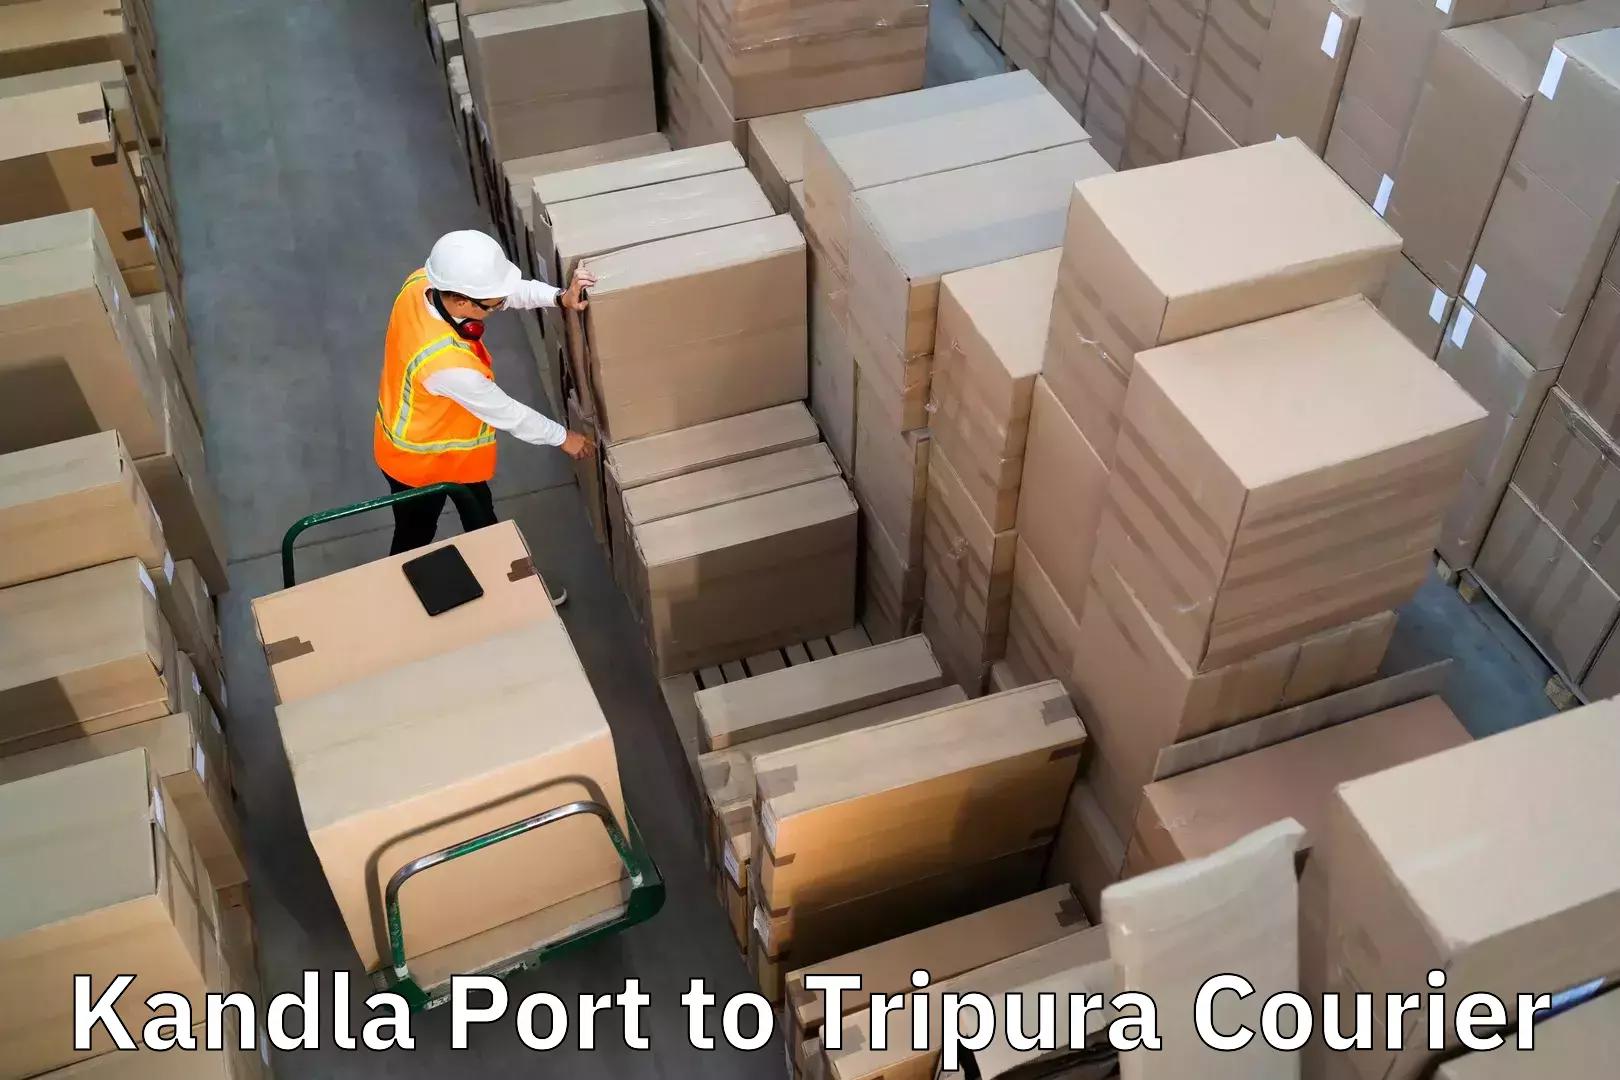 Luggage delivery estimate Kandla Port to Kailashahar